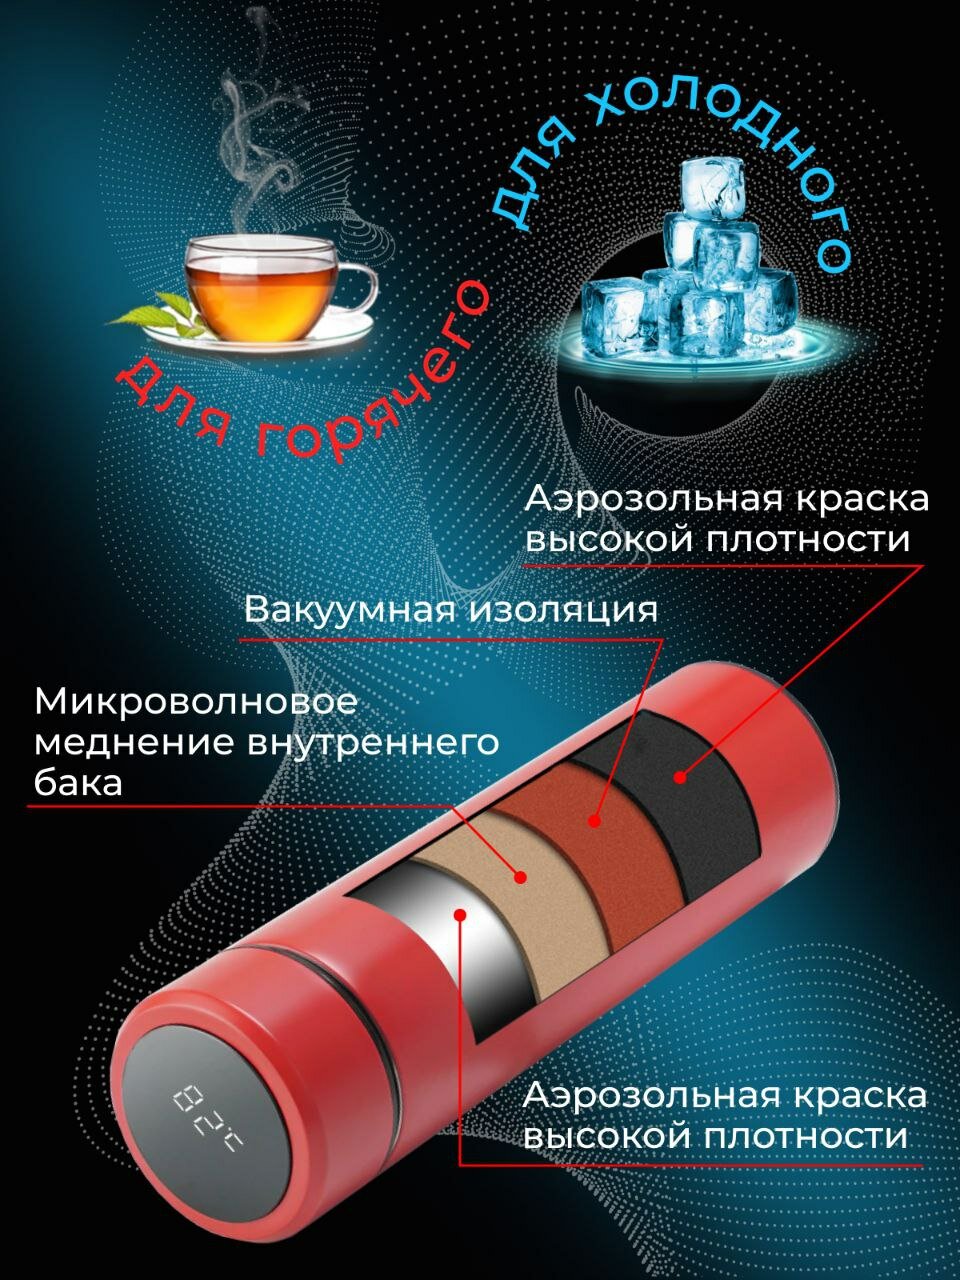 Термос IntermoS с датчиком температуры 500 мл, термокружка, красный